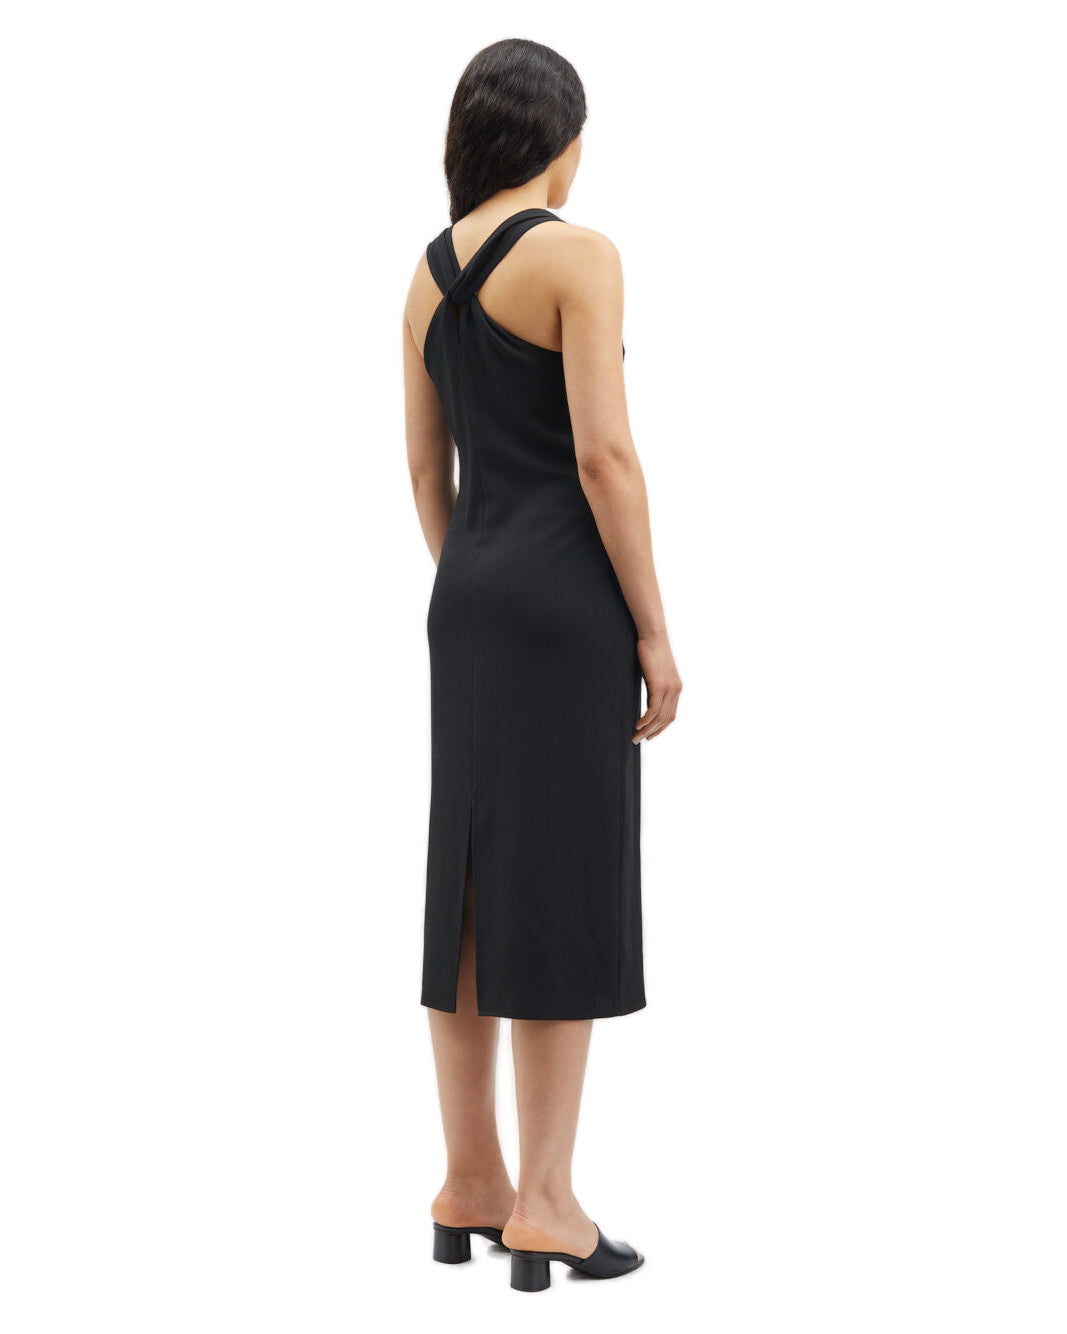 Samandy 15159 Dress - Black